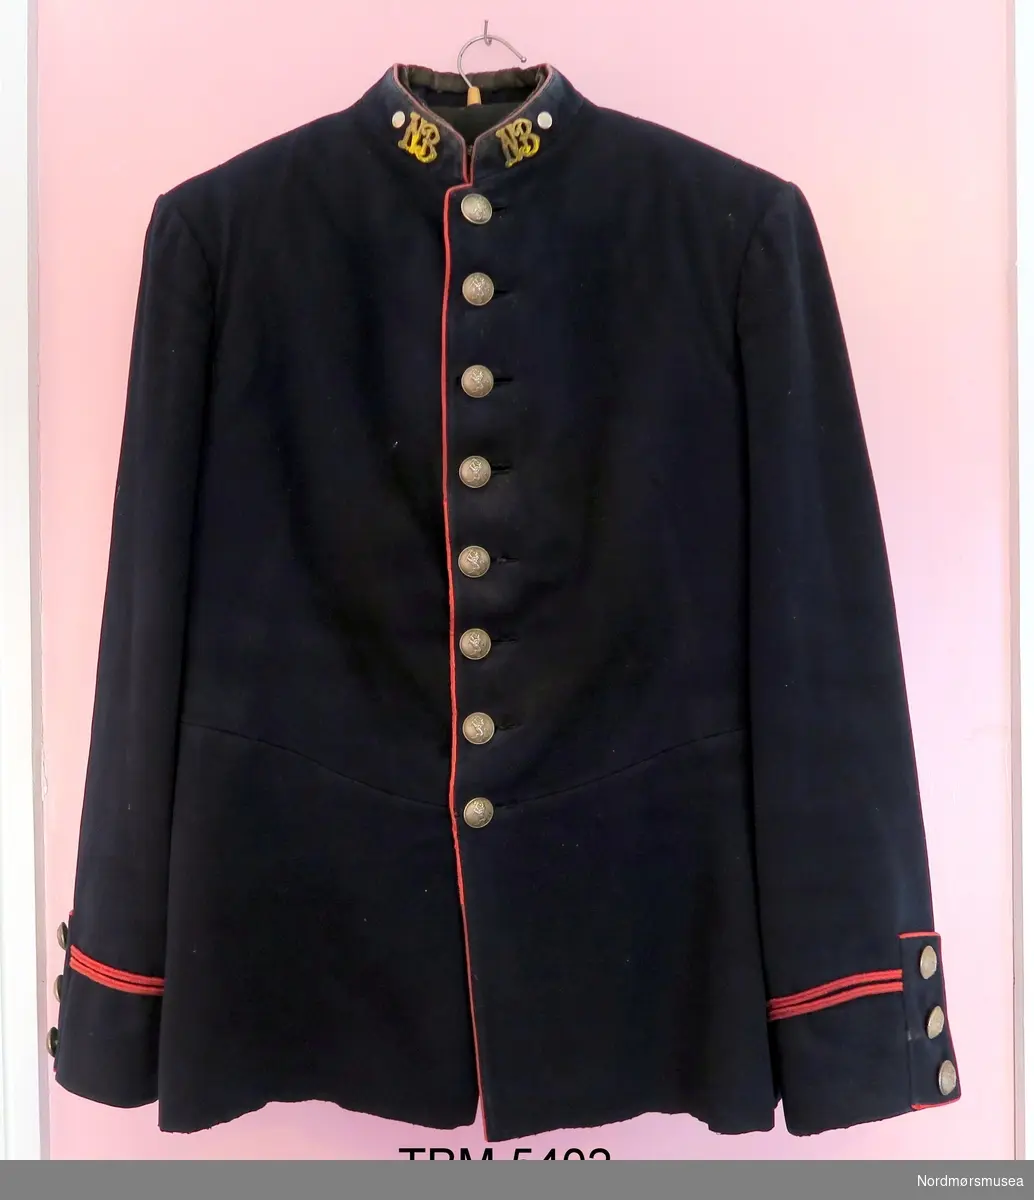 Militær jakke som er sort med raude kantar. Blanke knappar med norske løve på. På jakkekragen er det metallbokstavar, NB. Splitt med knappar og raude kantar bak.